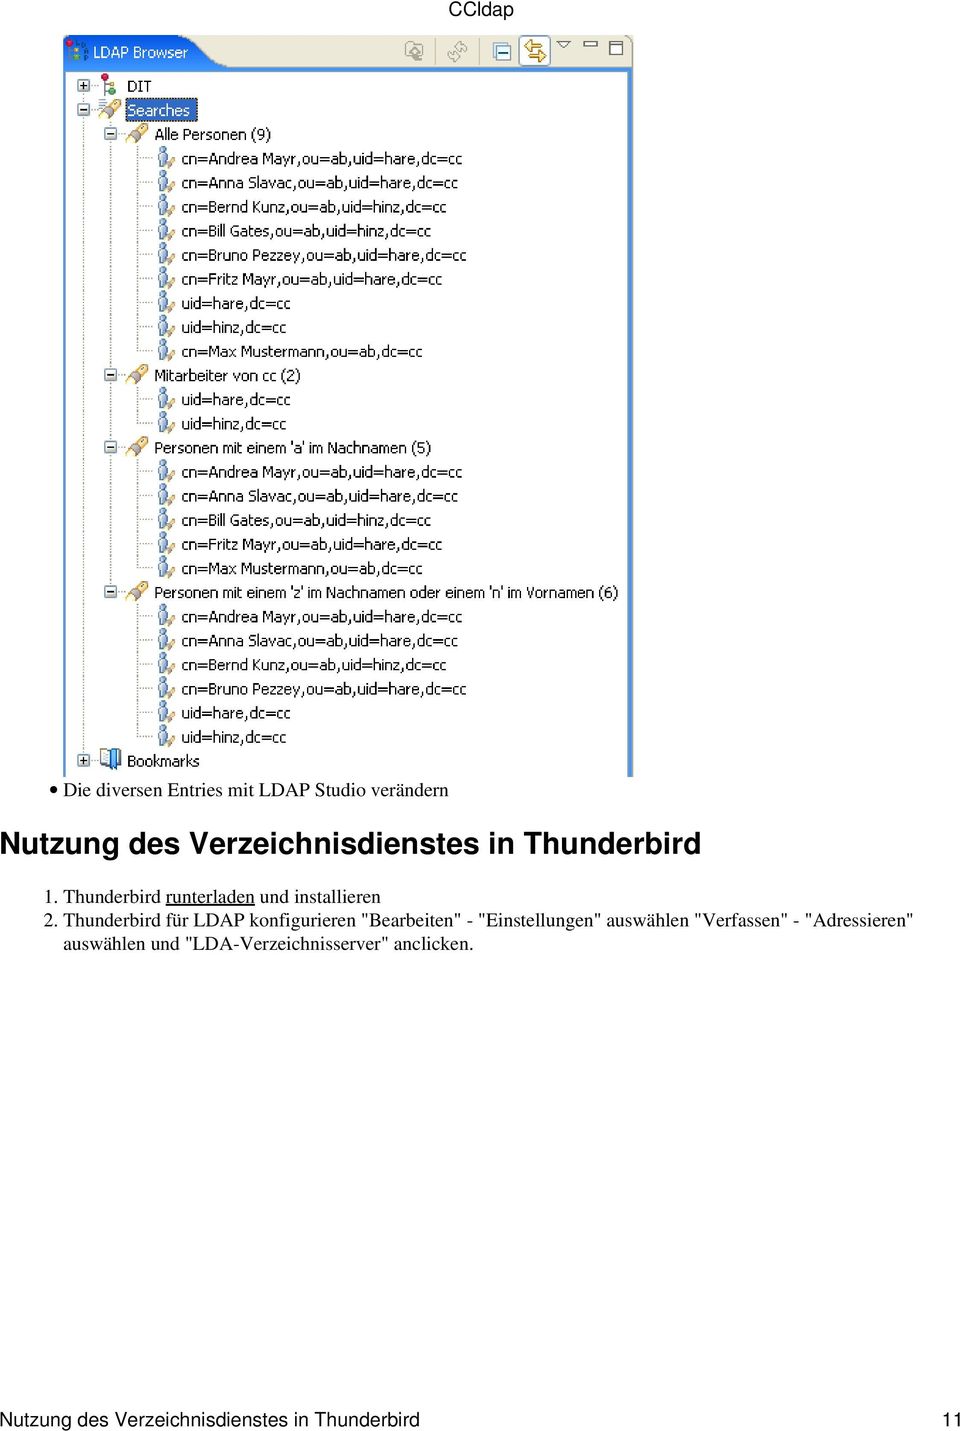 Thunderbird für LDAP konfigurieren "Bearbeiten" - "Einstellungen" auswählen